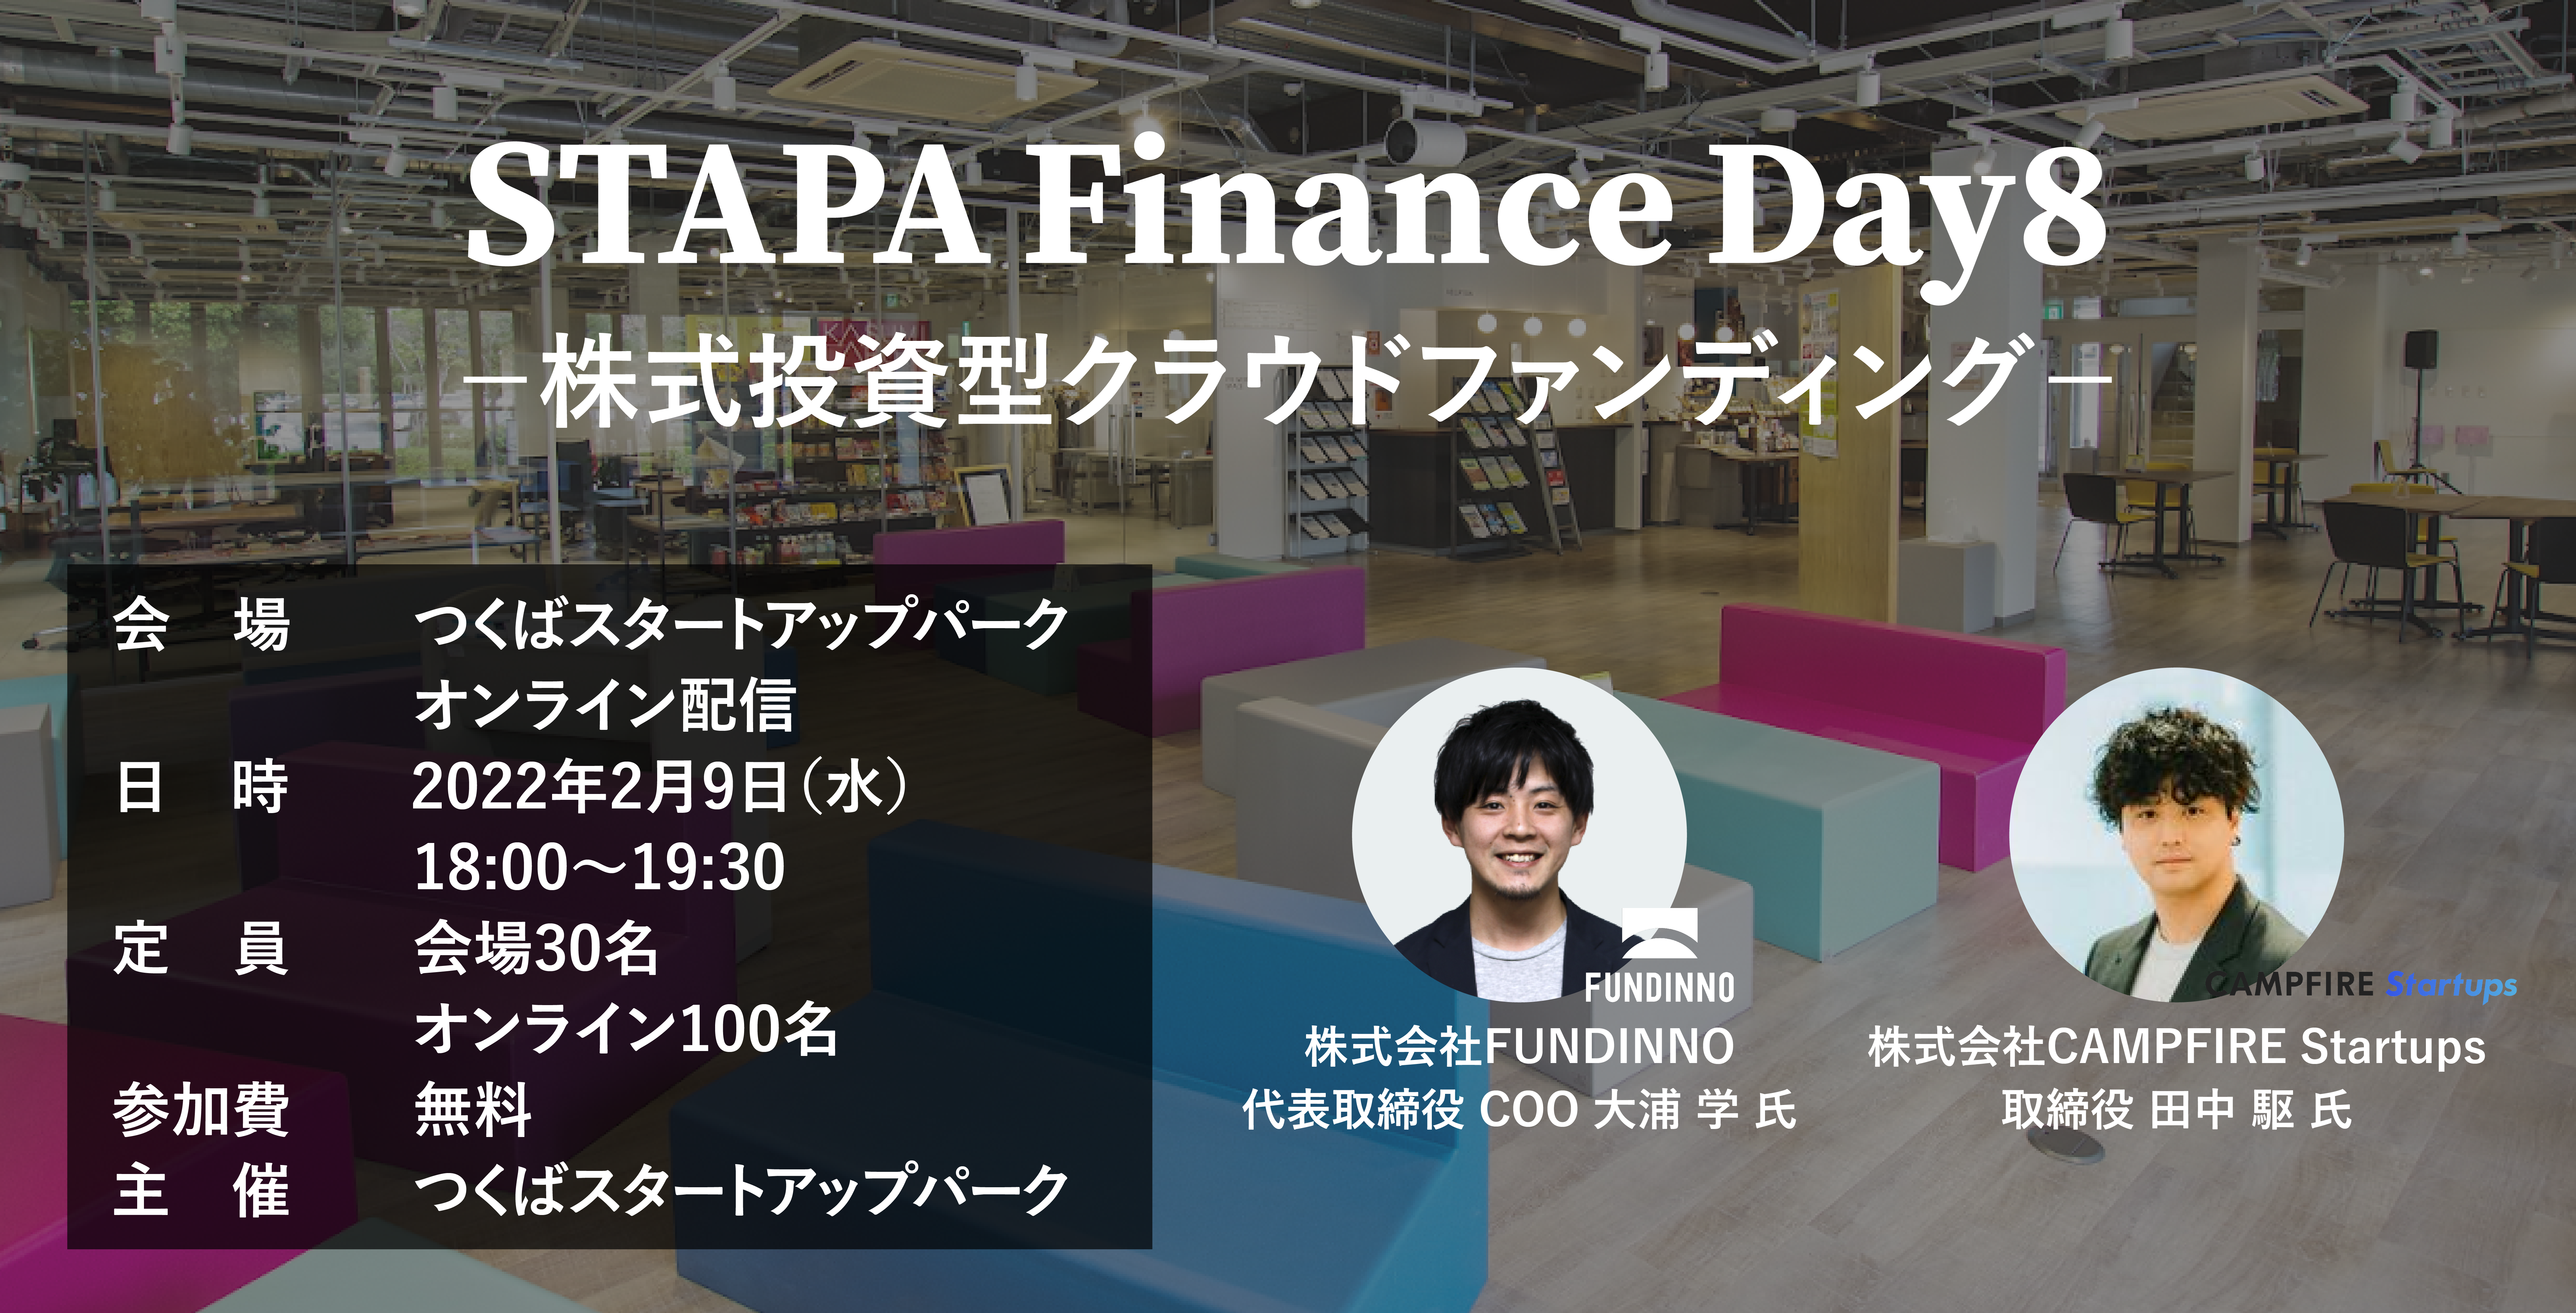 STAPA Finance Day8 －株式投資型クラウドファンディング－